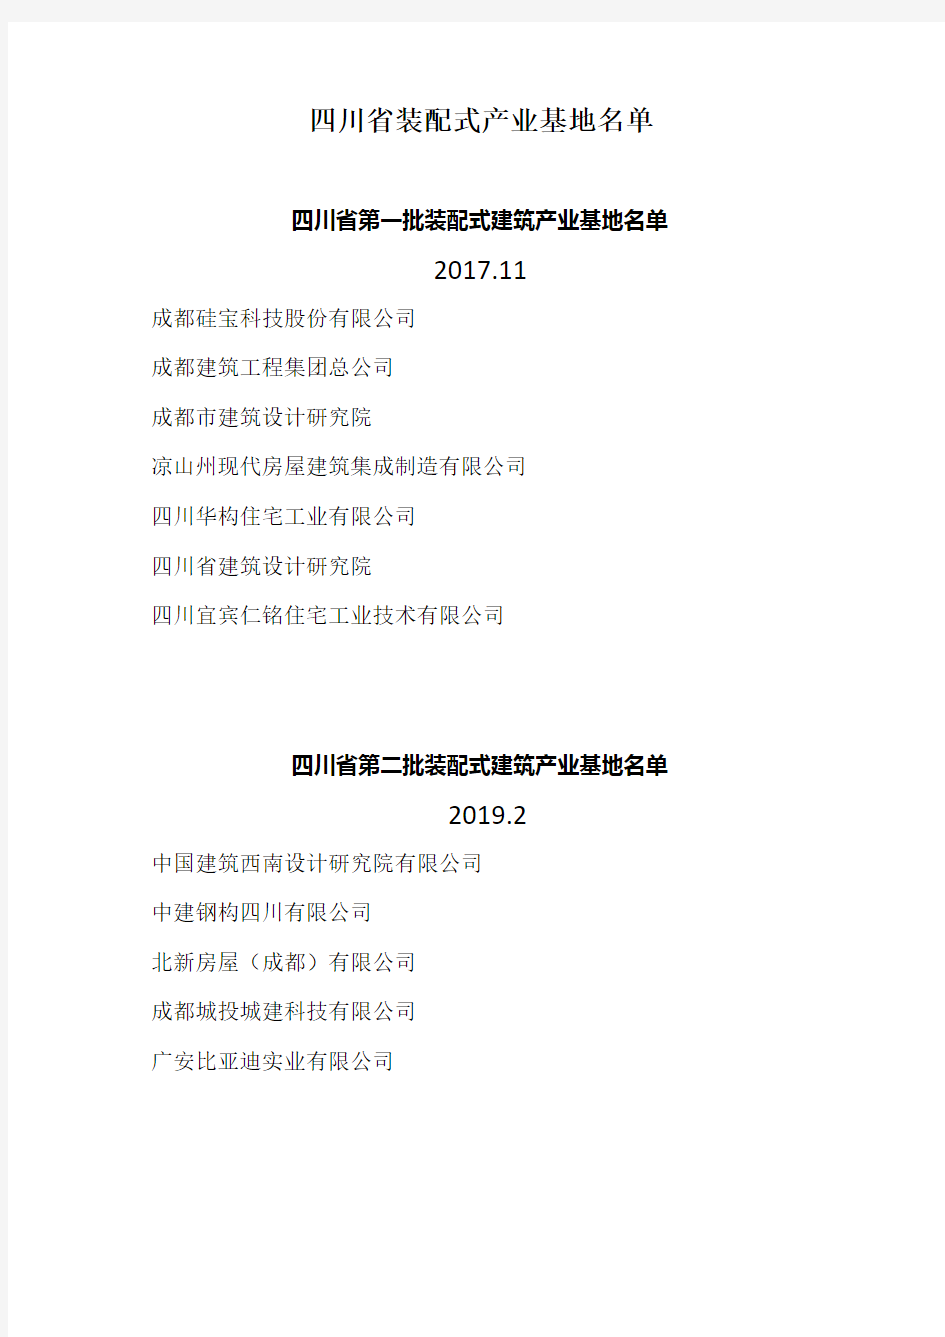 四川省装配式产业基地名录(第一、二、三、四批)